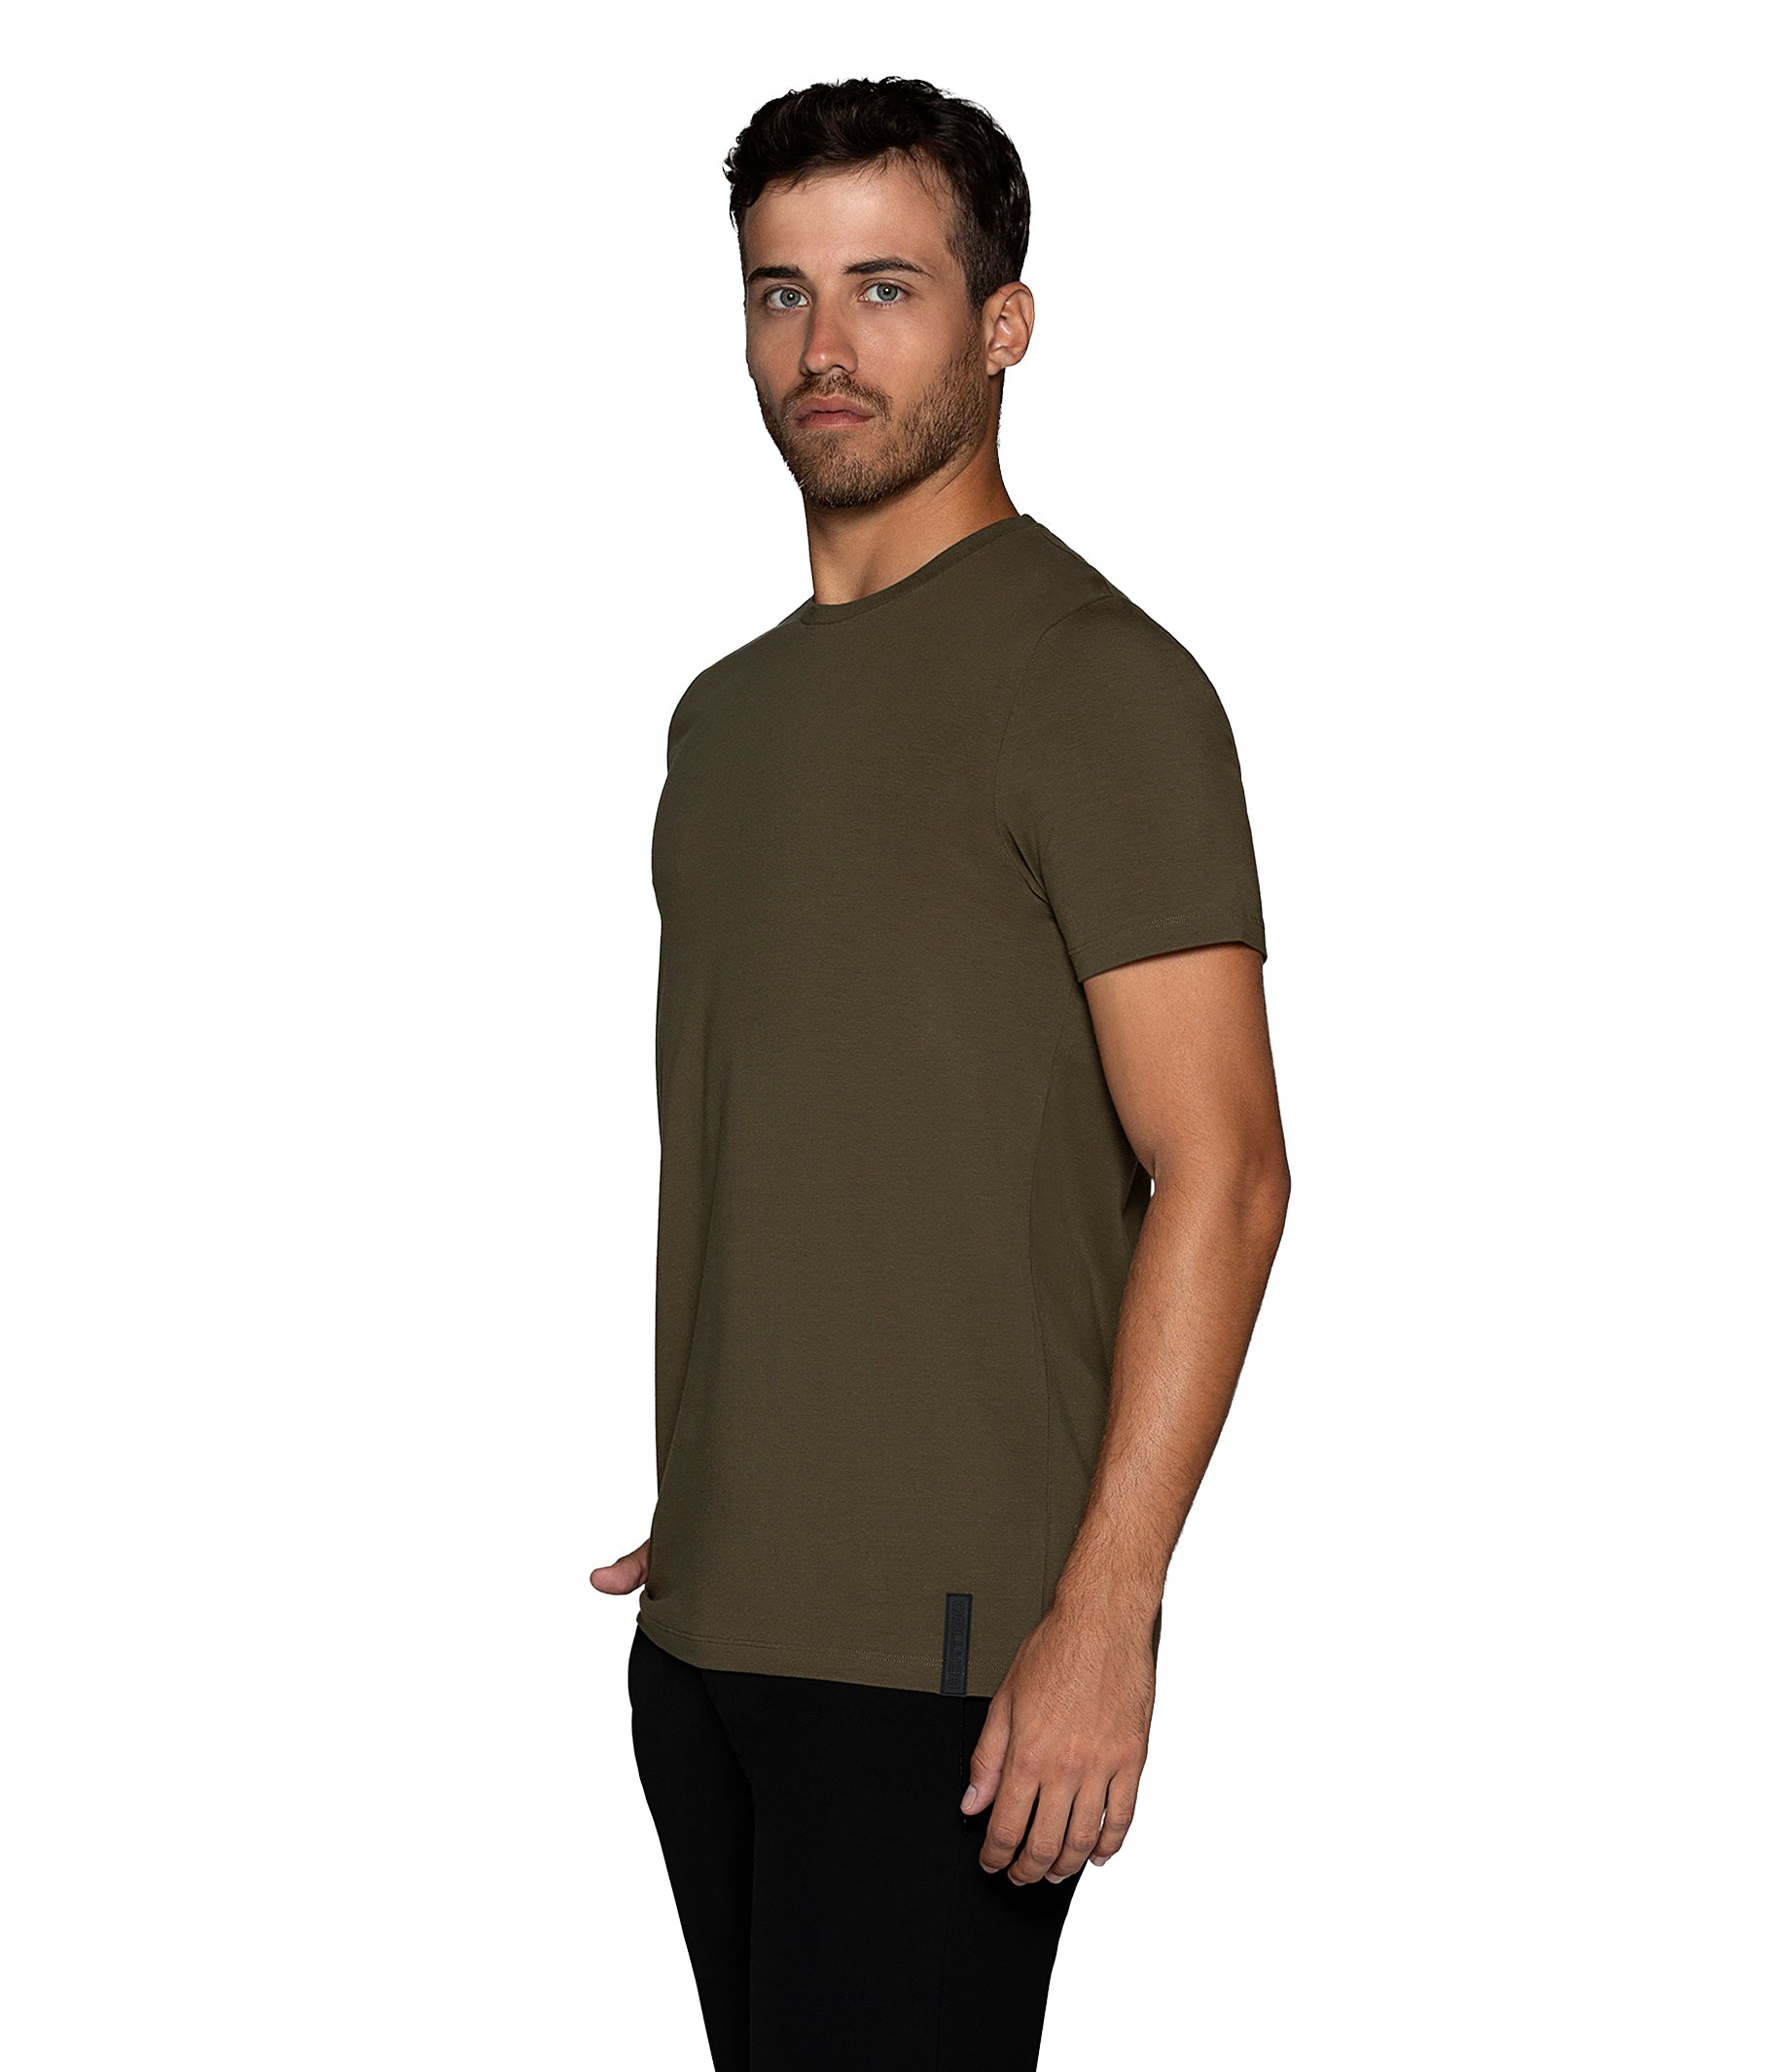 Bertigo Florance Solid Olive T Shirt for Men – Bertigo Shop